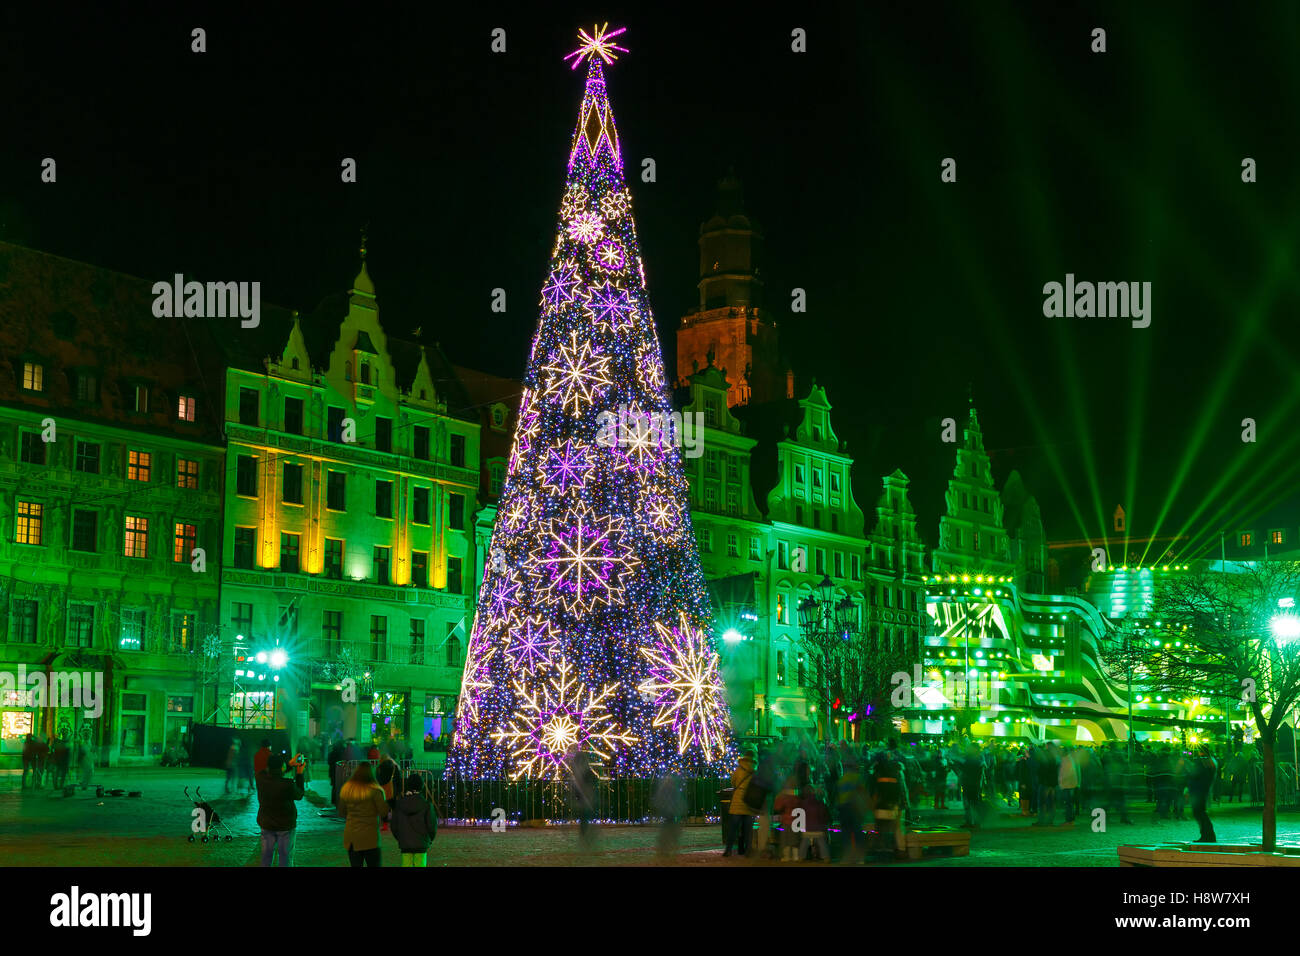 La luce laser show sulla piazza del mercato, Wroclaw, Polonia Foto Stock